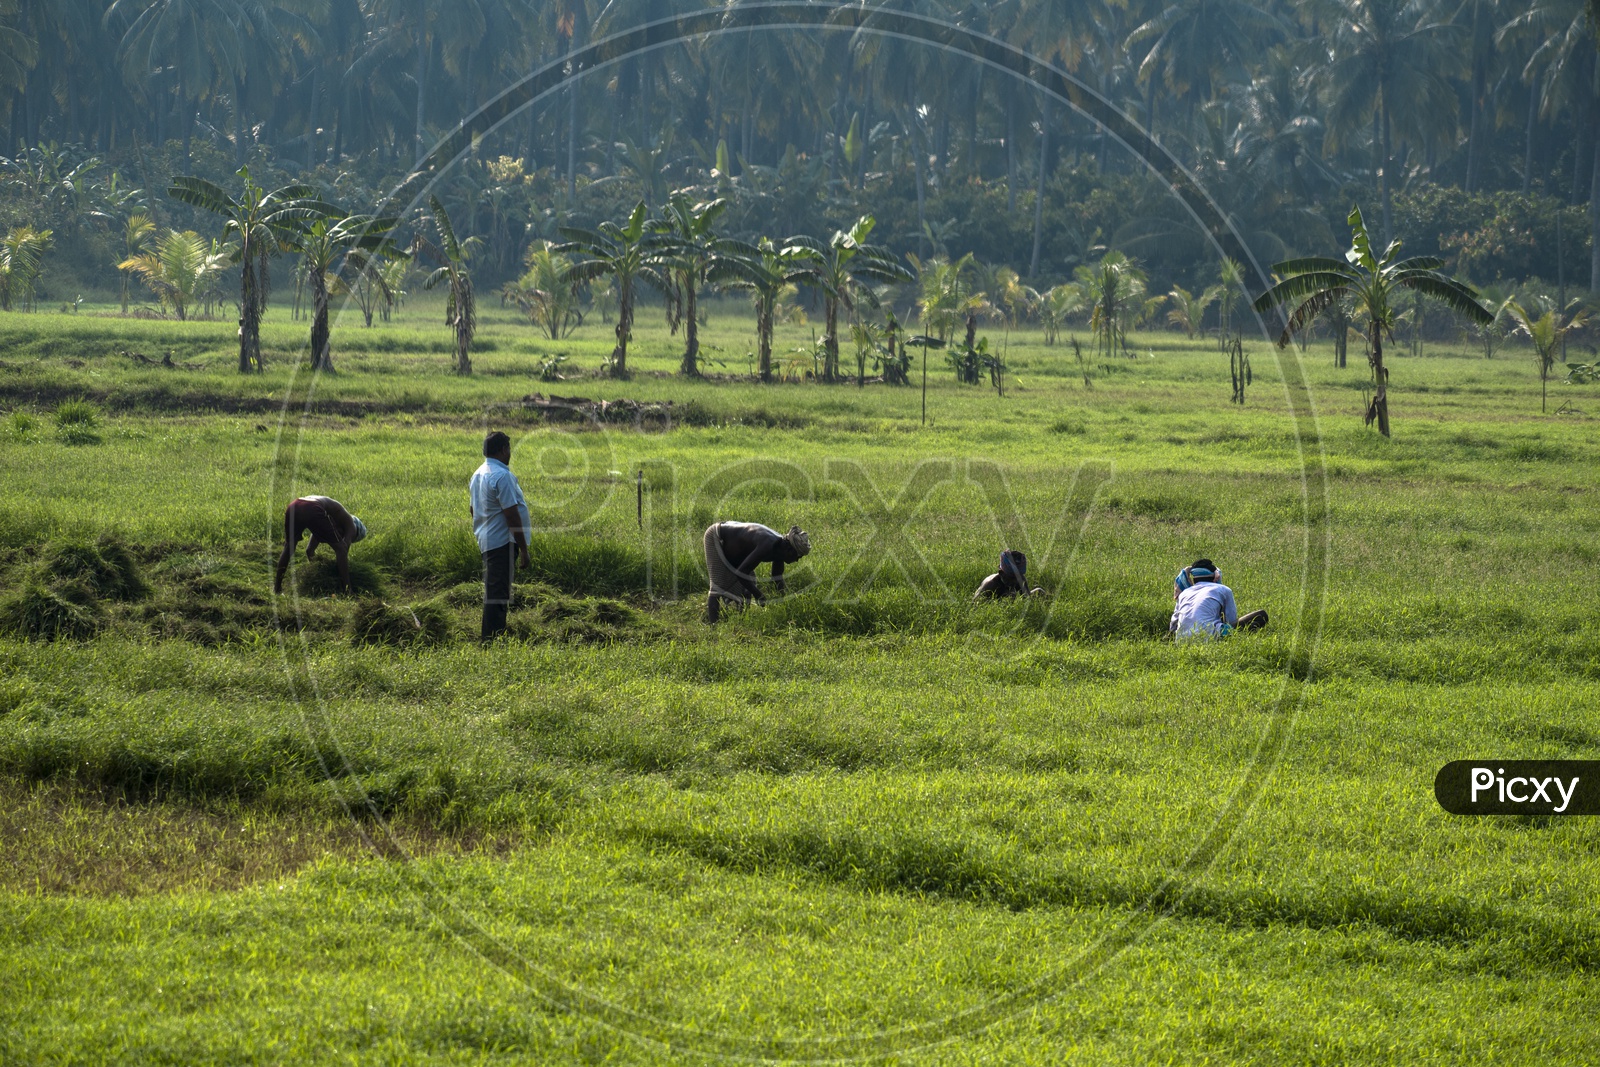 MEN WORKING IN FARM FIELDS